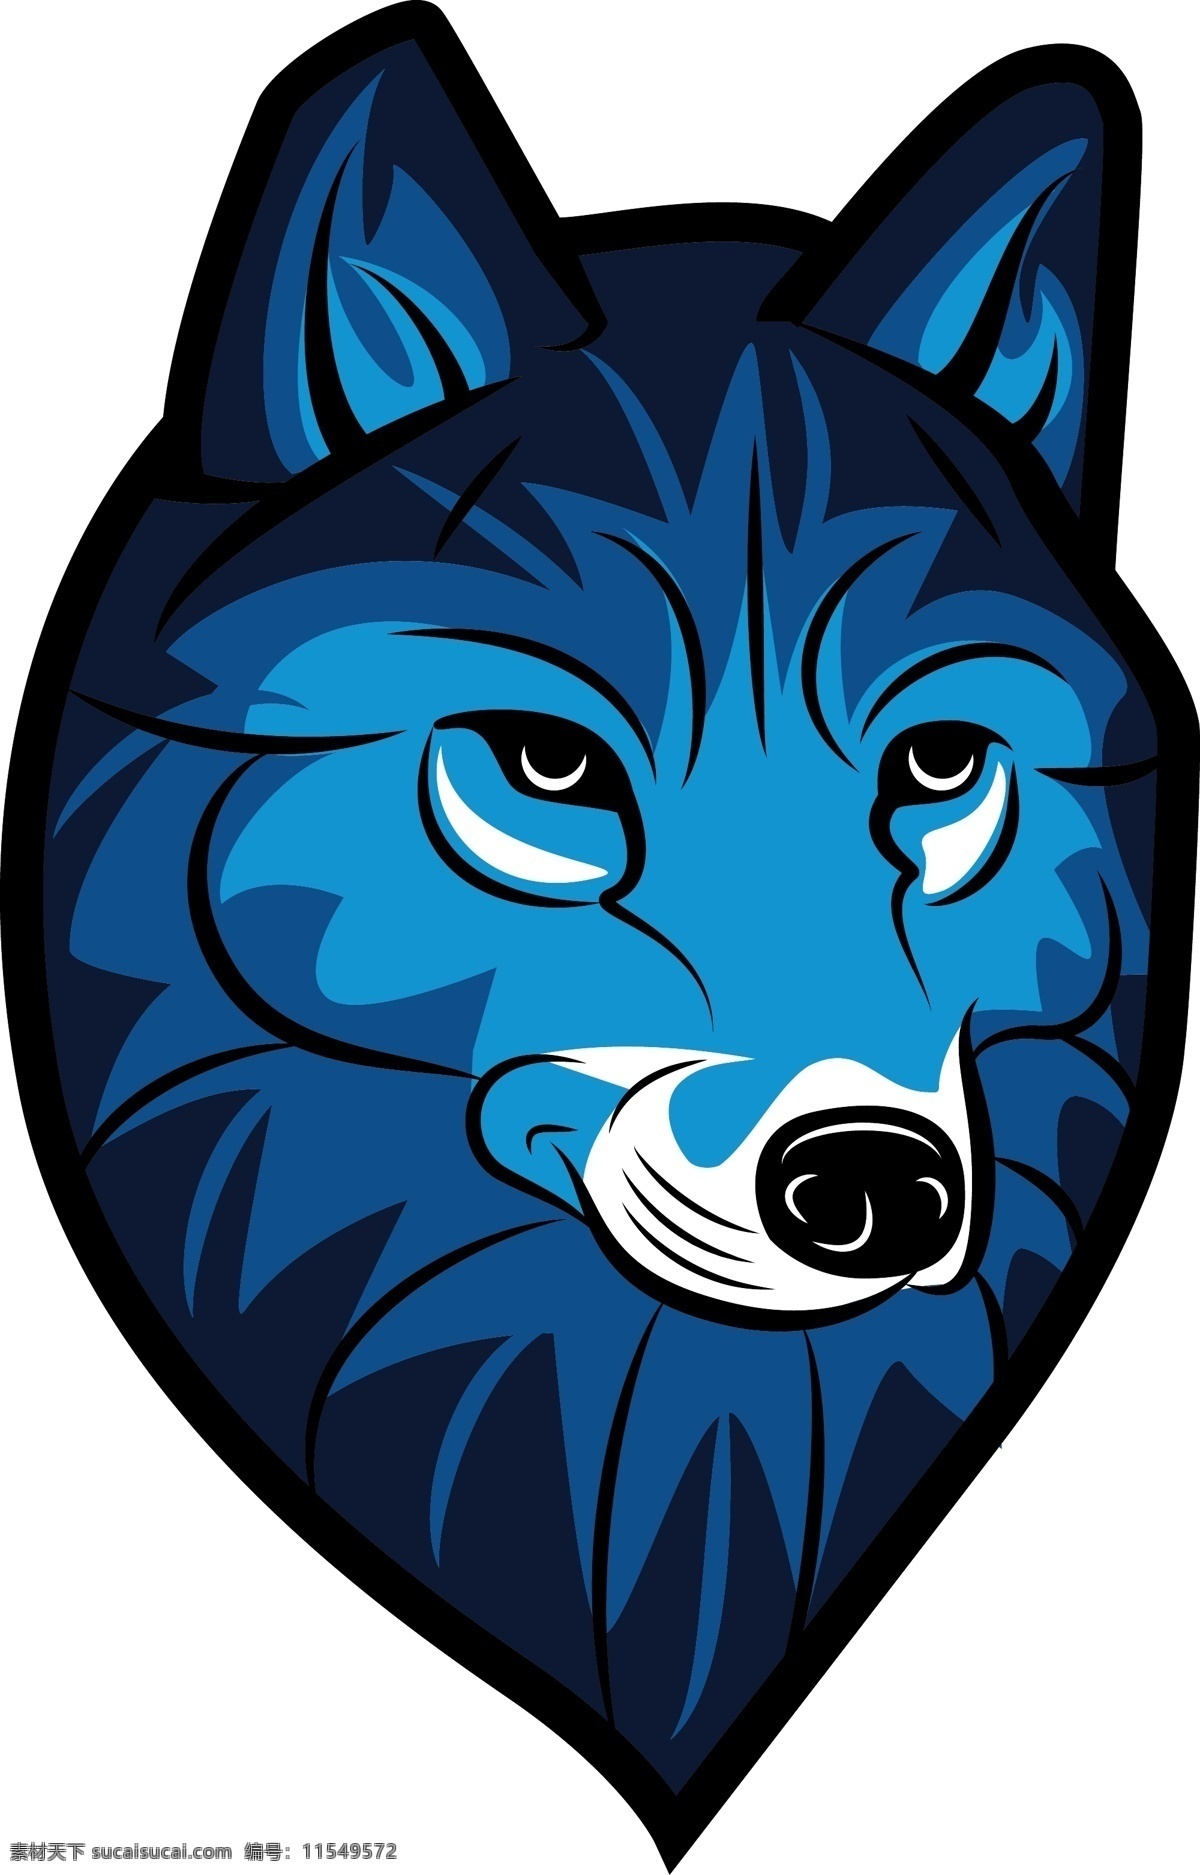 狼头徽标设计 狼头徽标 狼头 徽标设计 狼 共享设计矢量 生物世界 野生动物